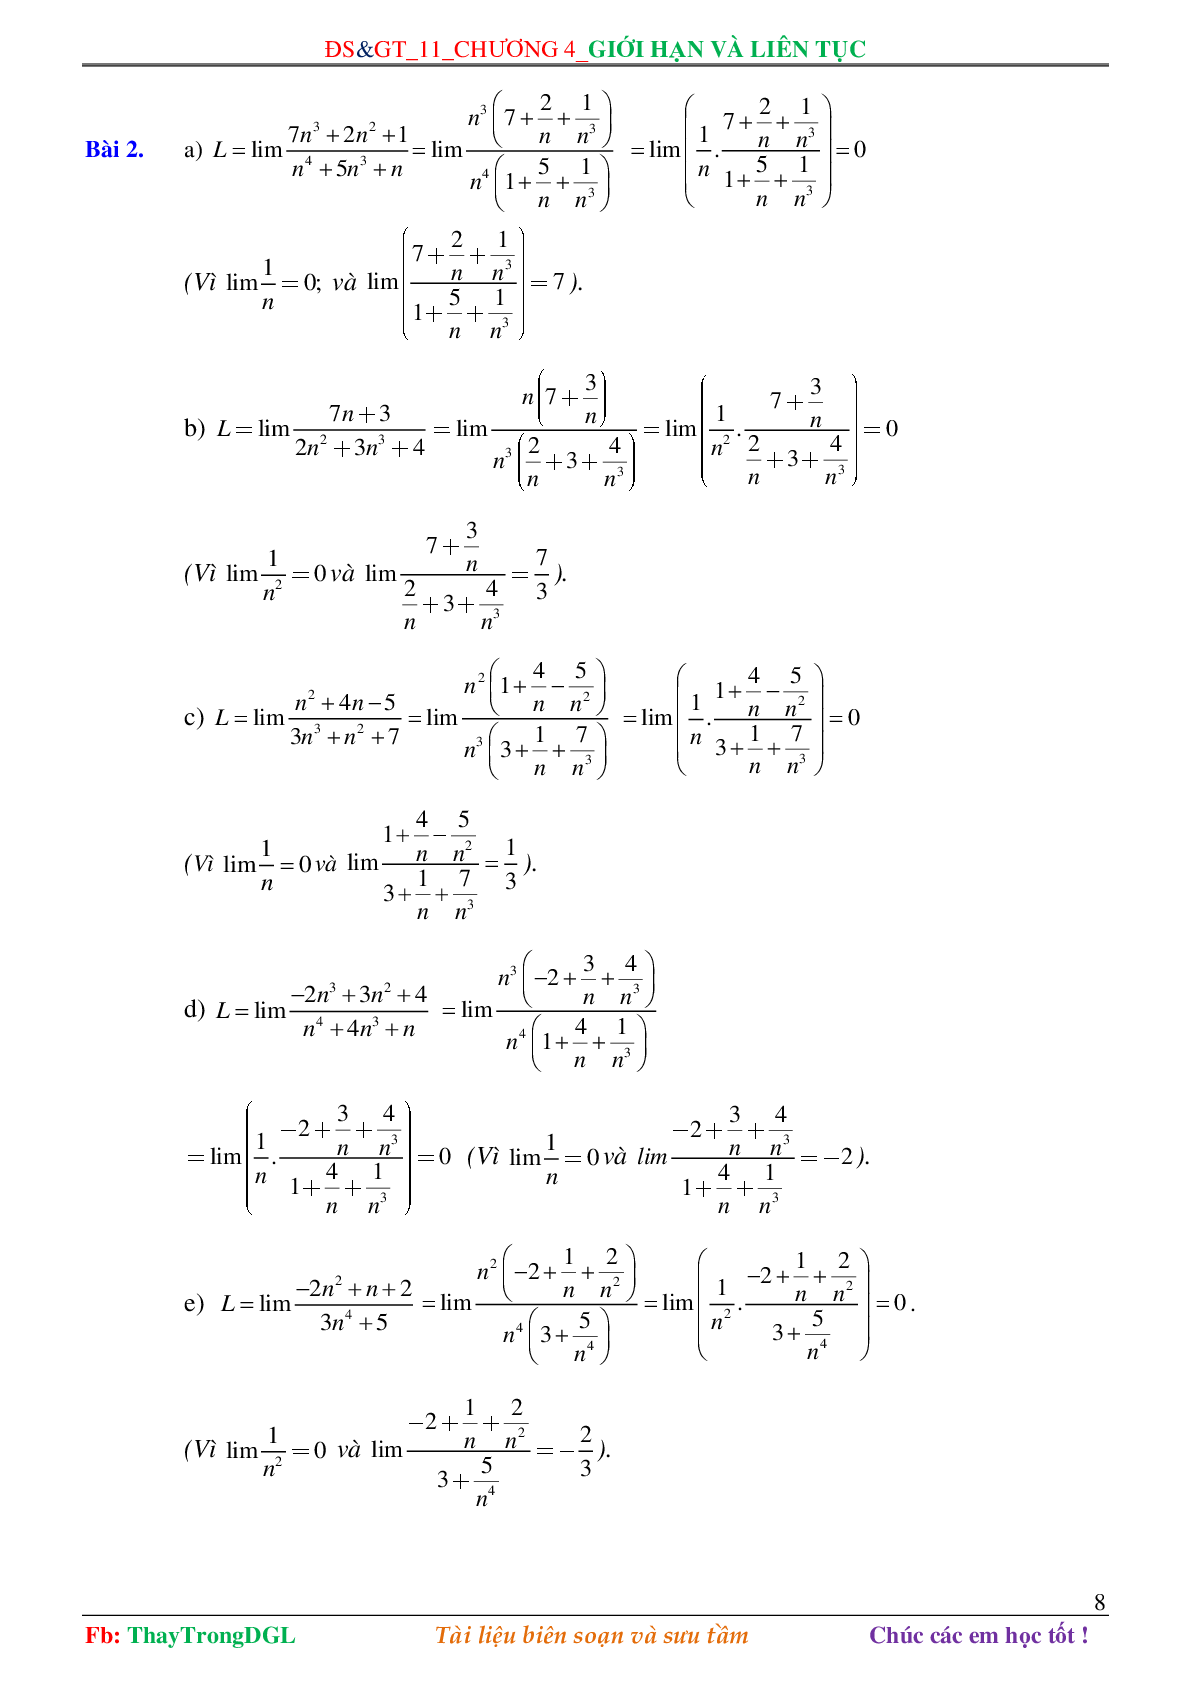 Các dạng toán về Giới hạn và liên tục (có bài tập kèm theo) (trang 8)